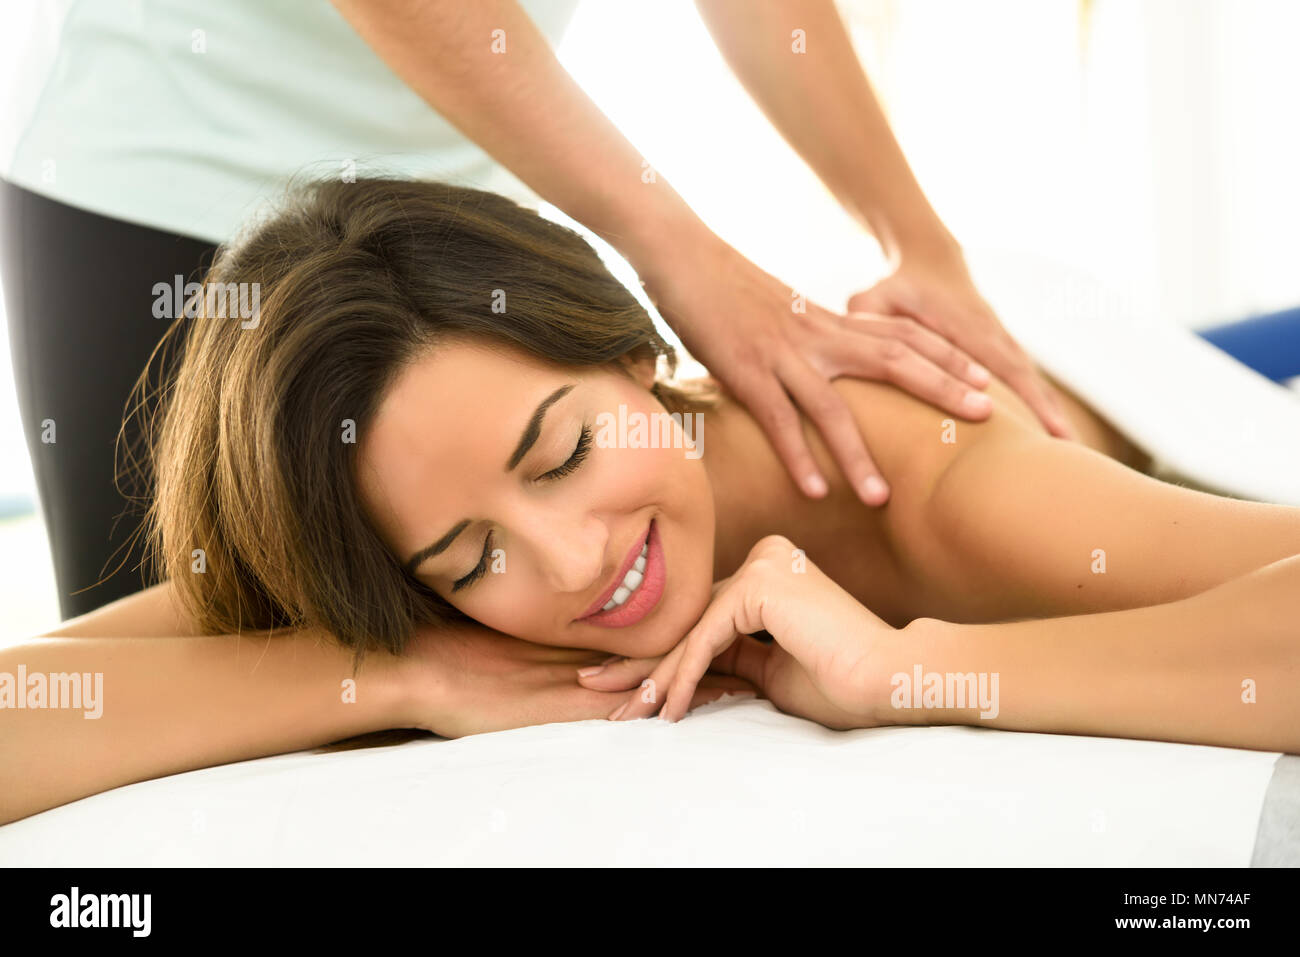 Junge Frauen, die eine Rückenmassage in einem Wellnesscenter. Weibliche Patienten ist, die Behandlung von professionellen Therapeuten. Stockfoto